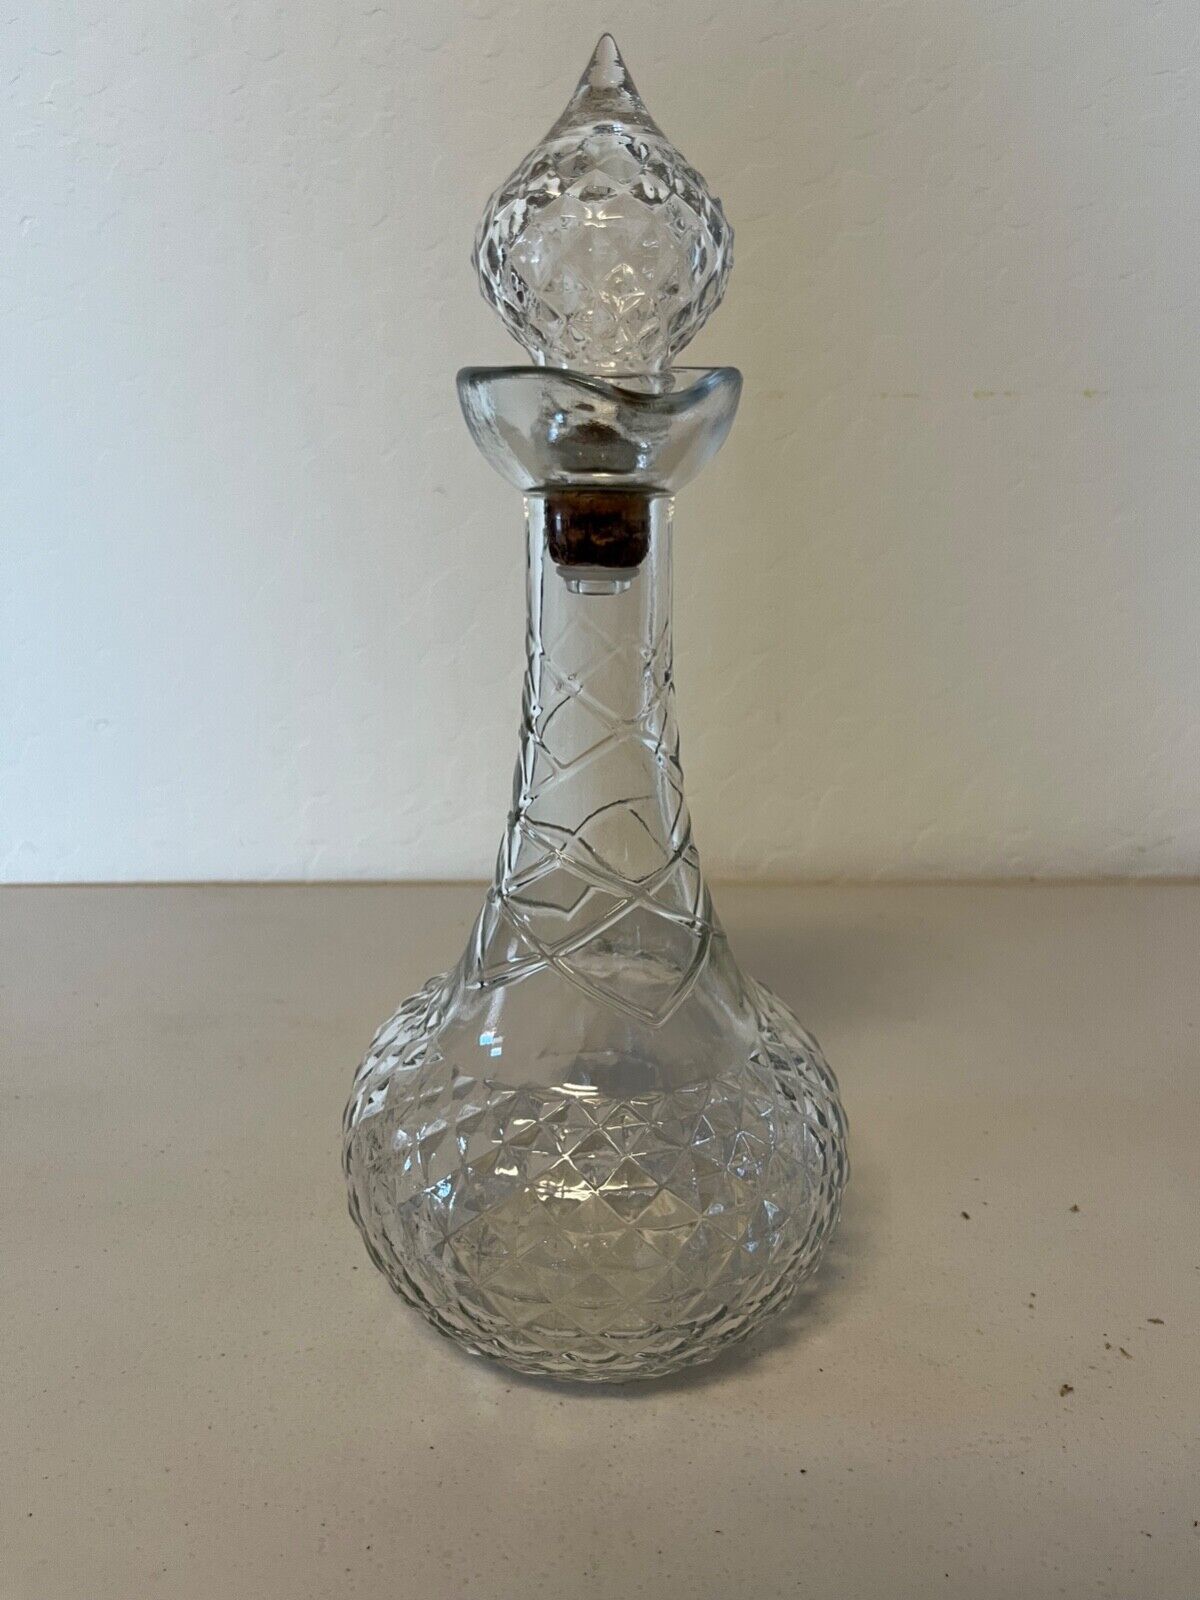 VTG 1950s Smirnoff Vodka Genie Bottle Decanter Clear Glass Stamped R-105 58-56